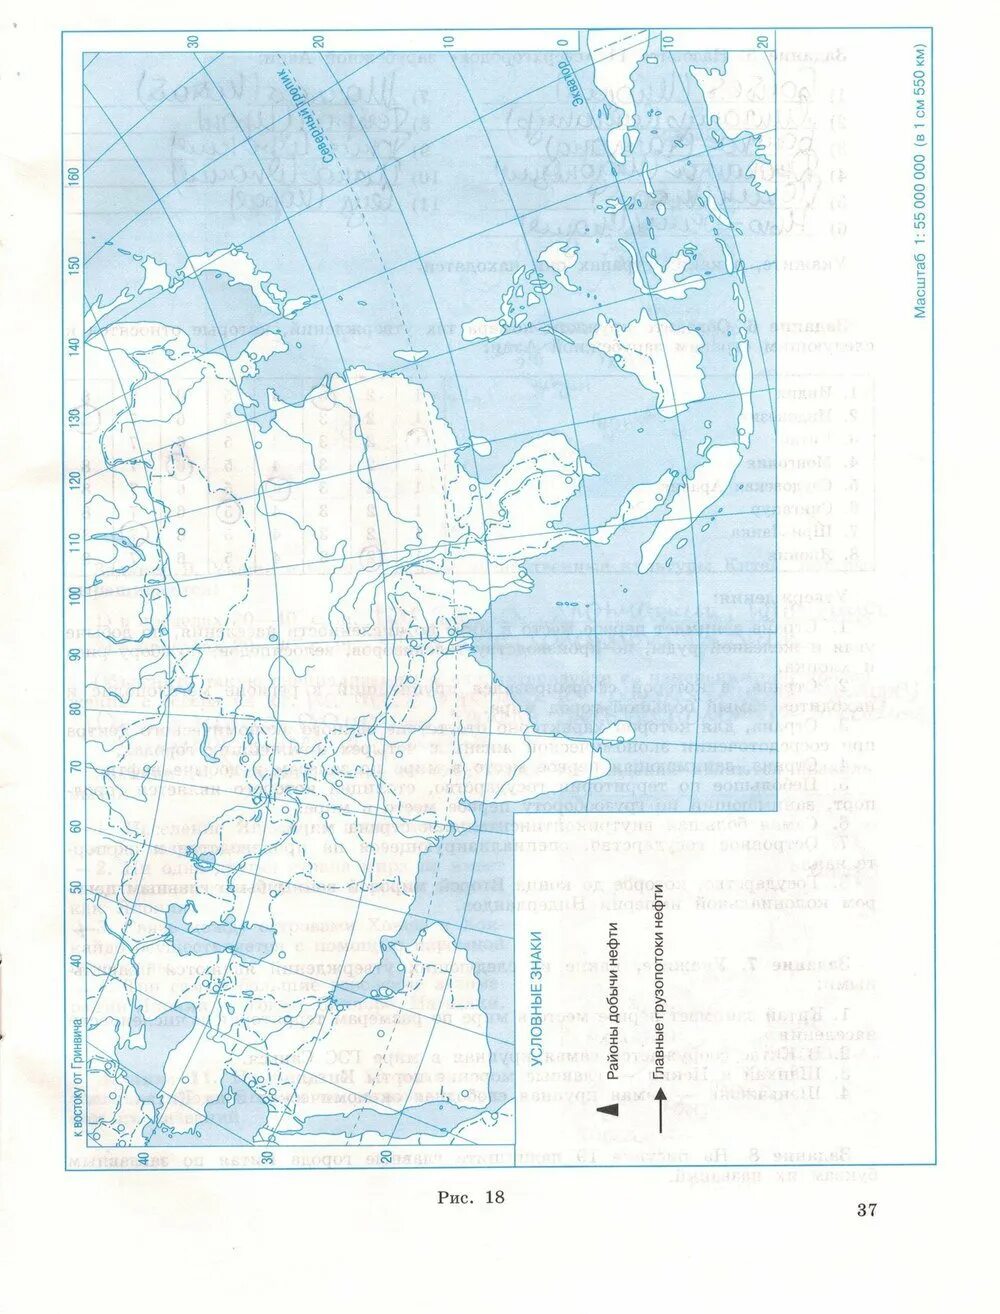 Максаковский география 10 11 контурная карта